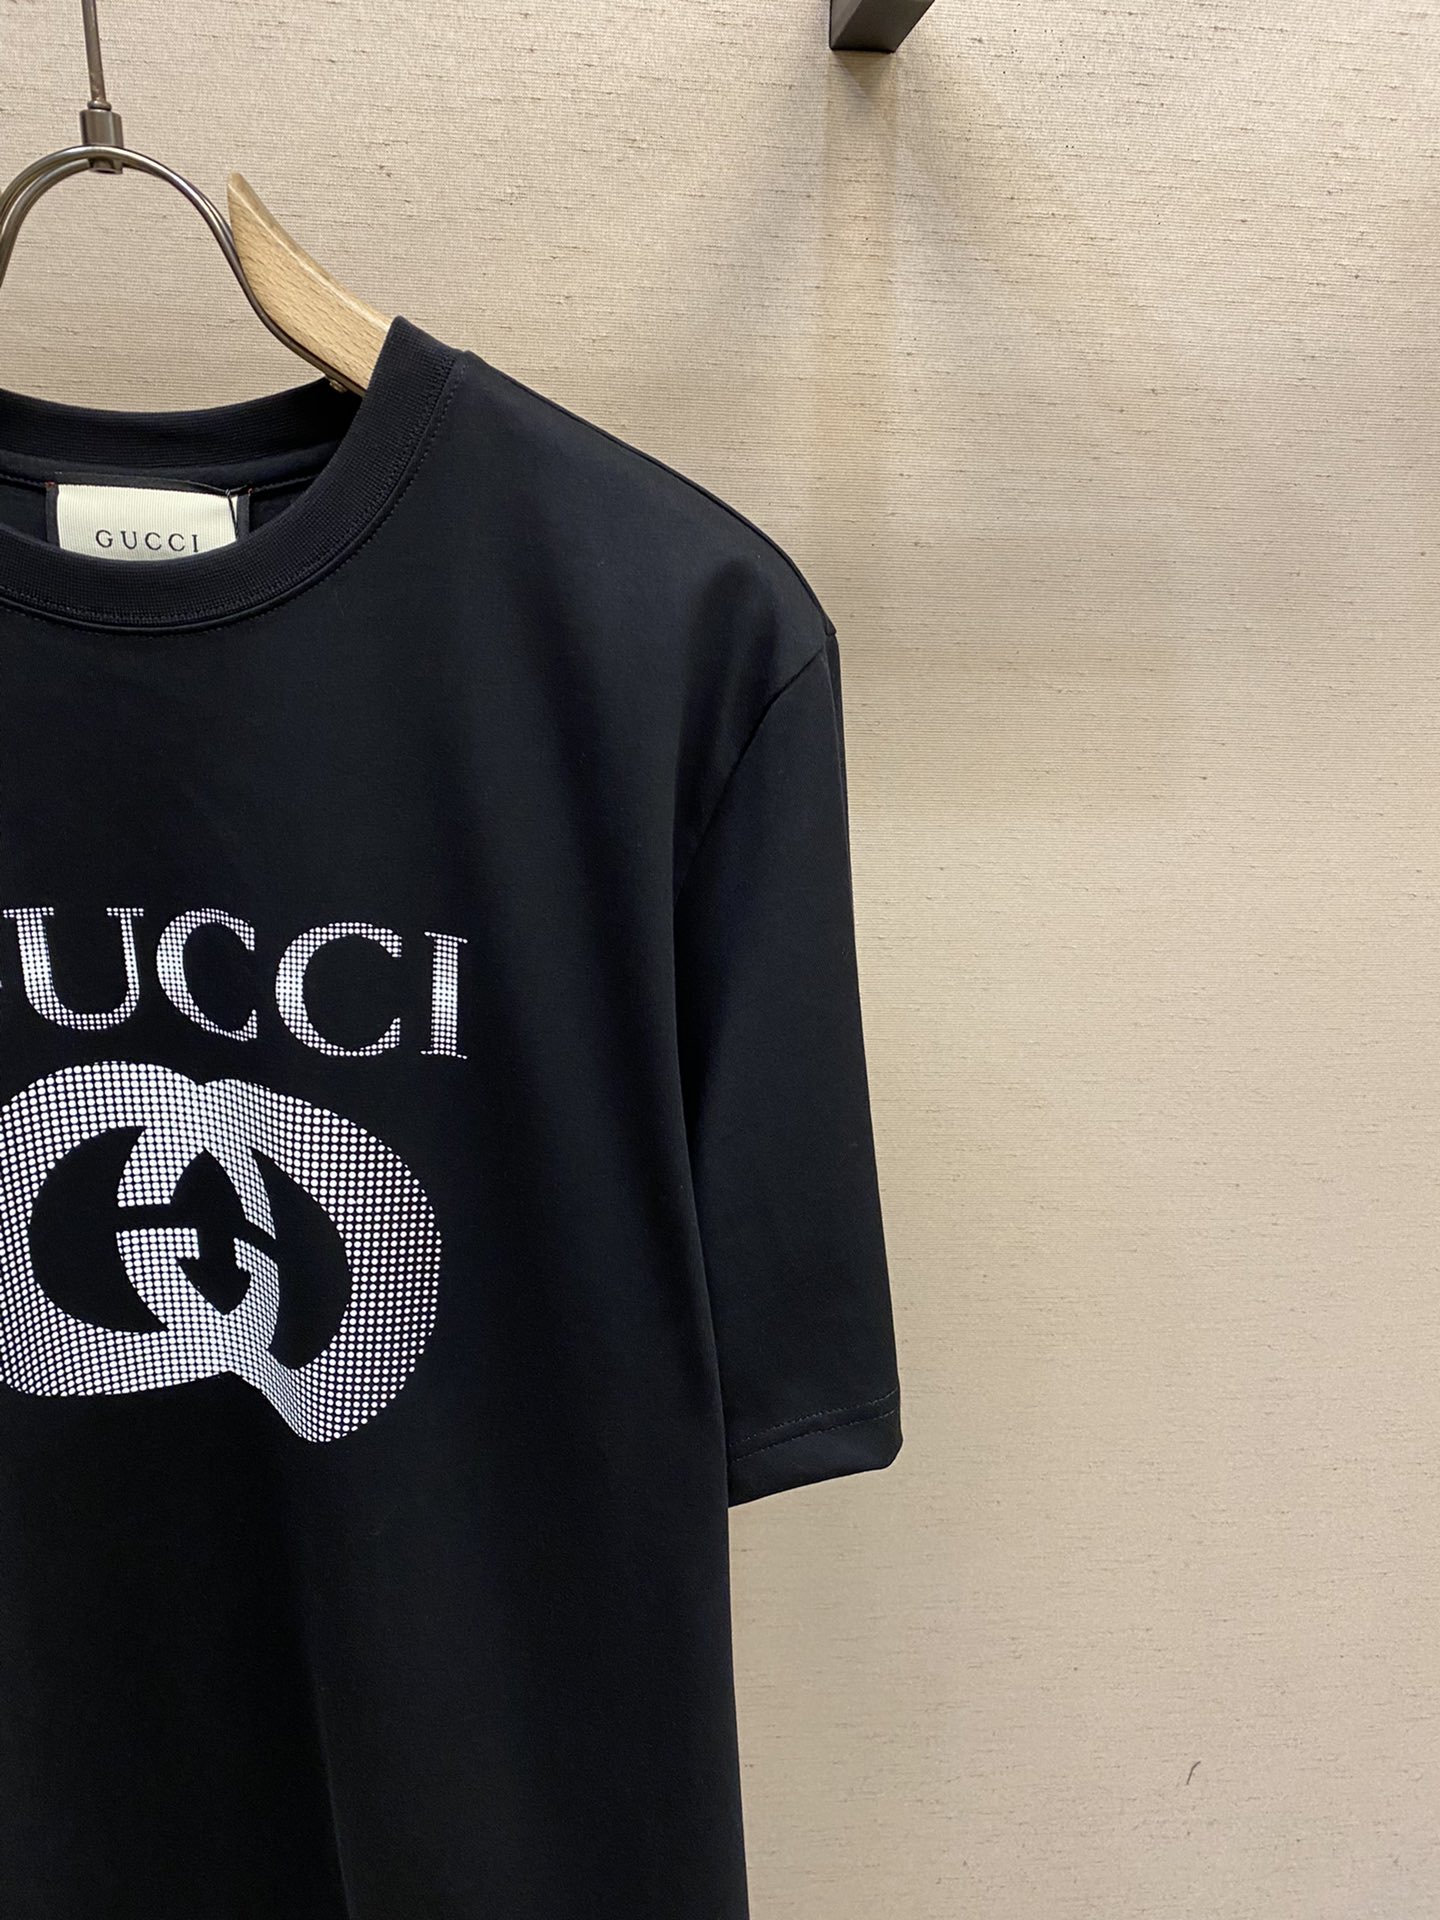 Gucci24春夏限定新款双GG印花情侣款短袖T恤情侣街拍的时尚款短TEE炸街系列经典再现的双GG印花l